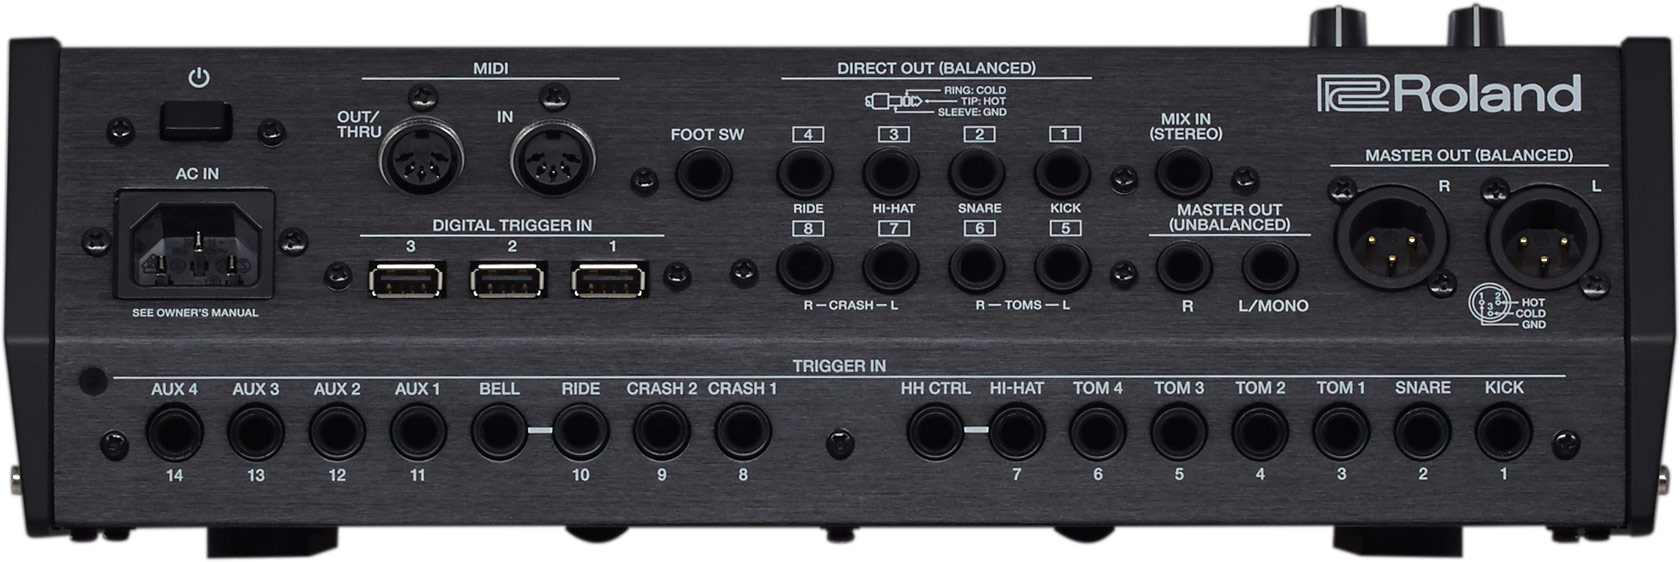 Roland - TD-50X | Sound Module